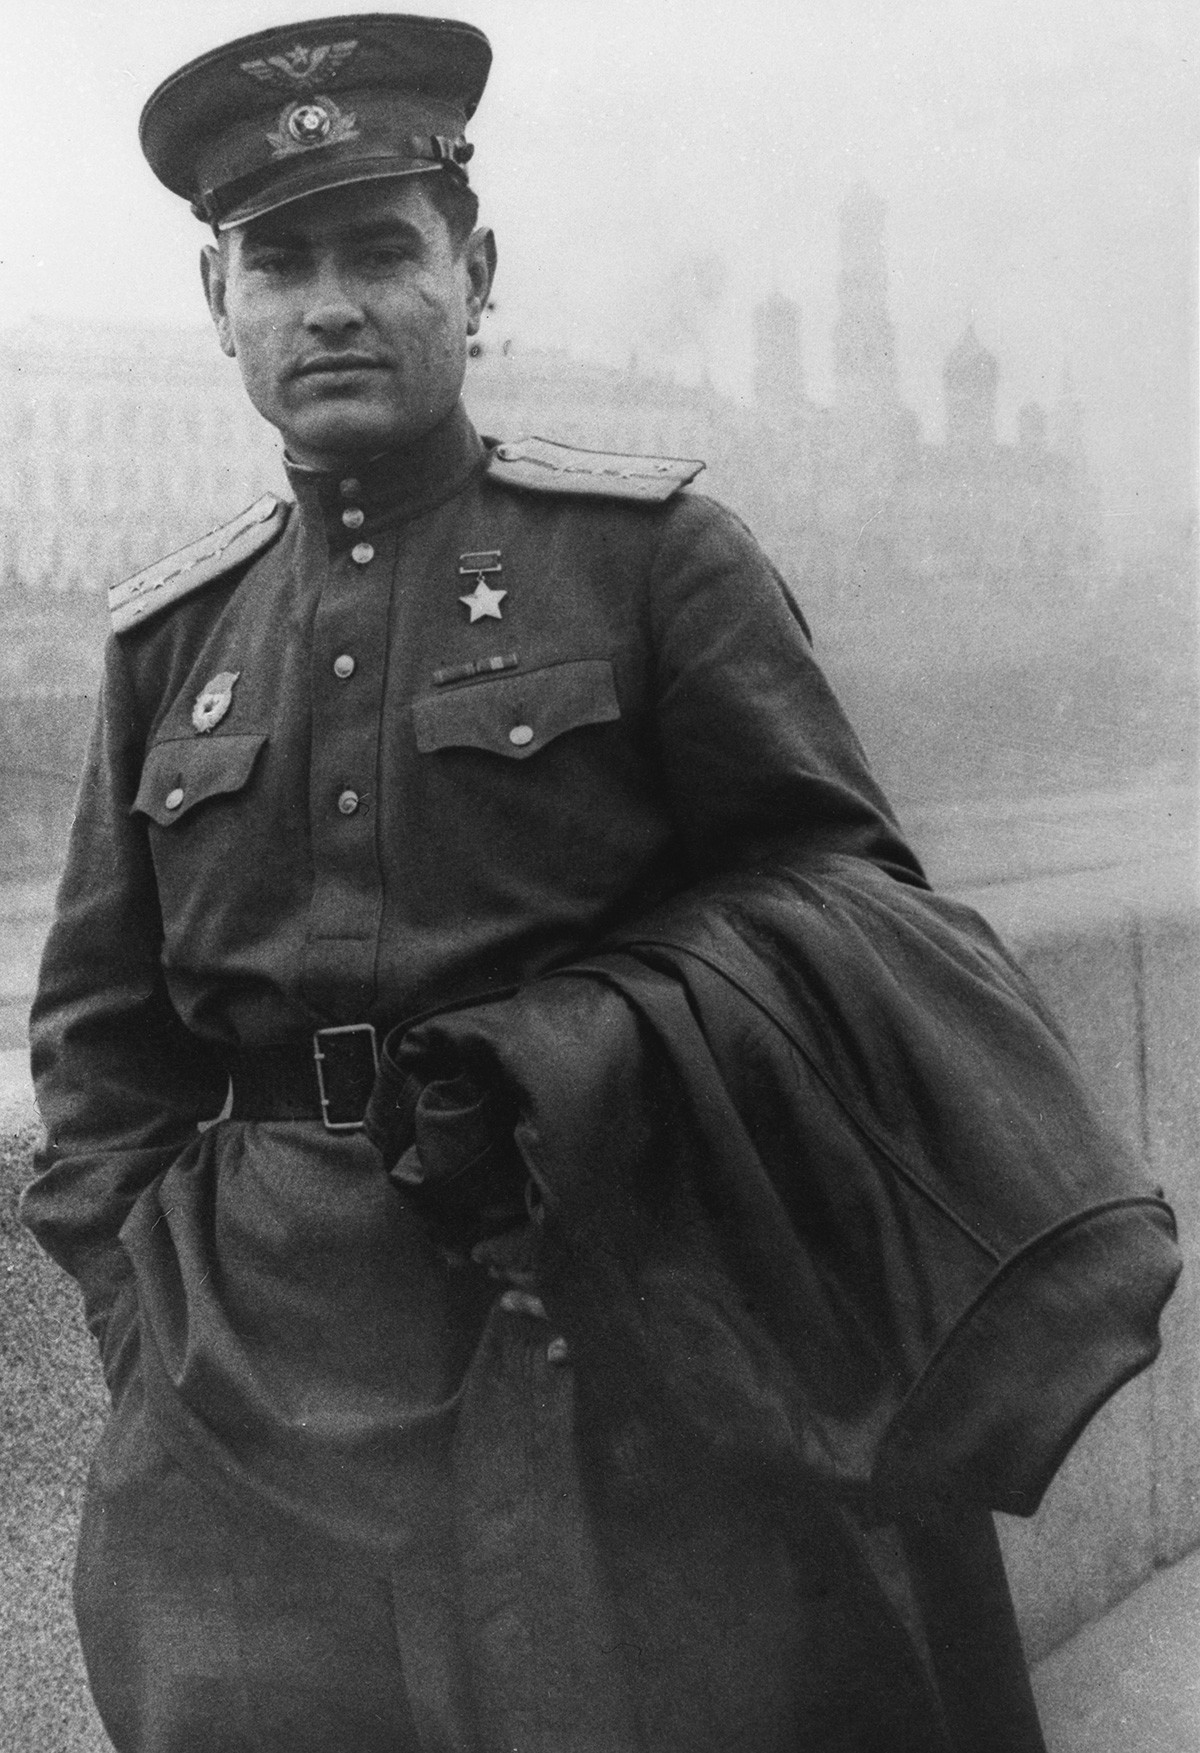 1. јануар 1943. Подвиг Алексеја Маресјева се прочуо захваљујући публикацији посвећеној његовом подвигу коју је под називом „Повест о правом човеку“ објавио ратни дописник Борис Пољевој. 